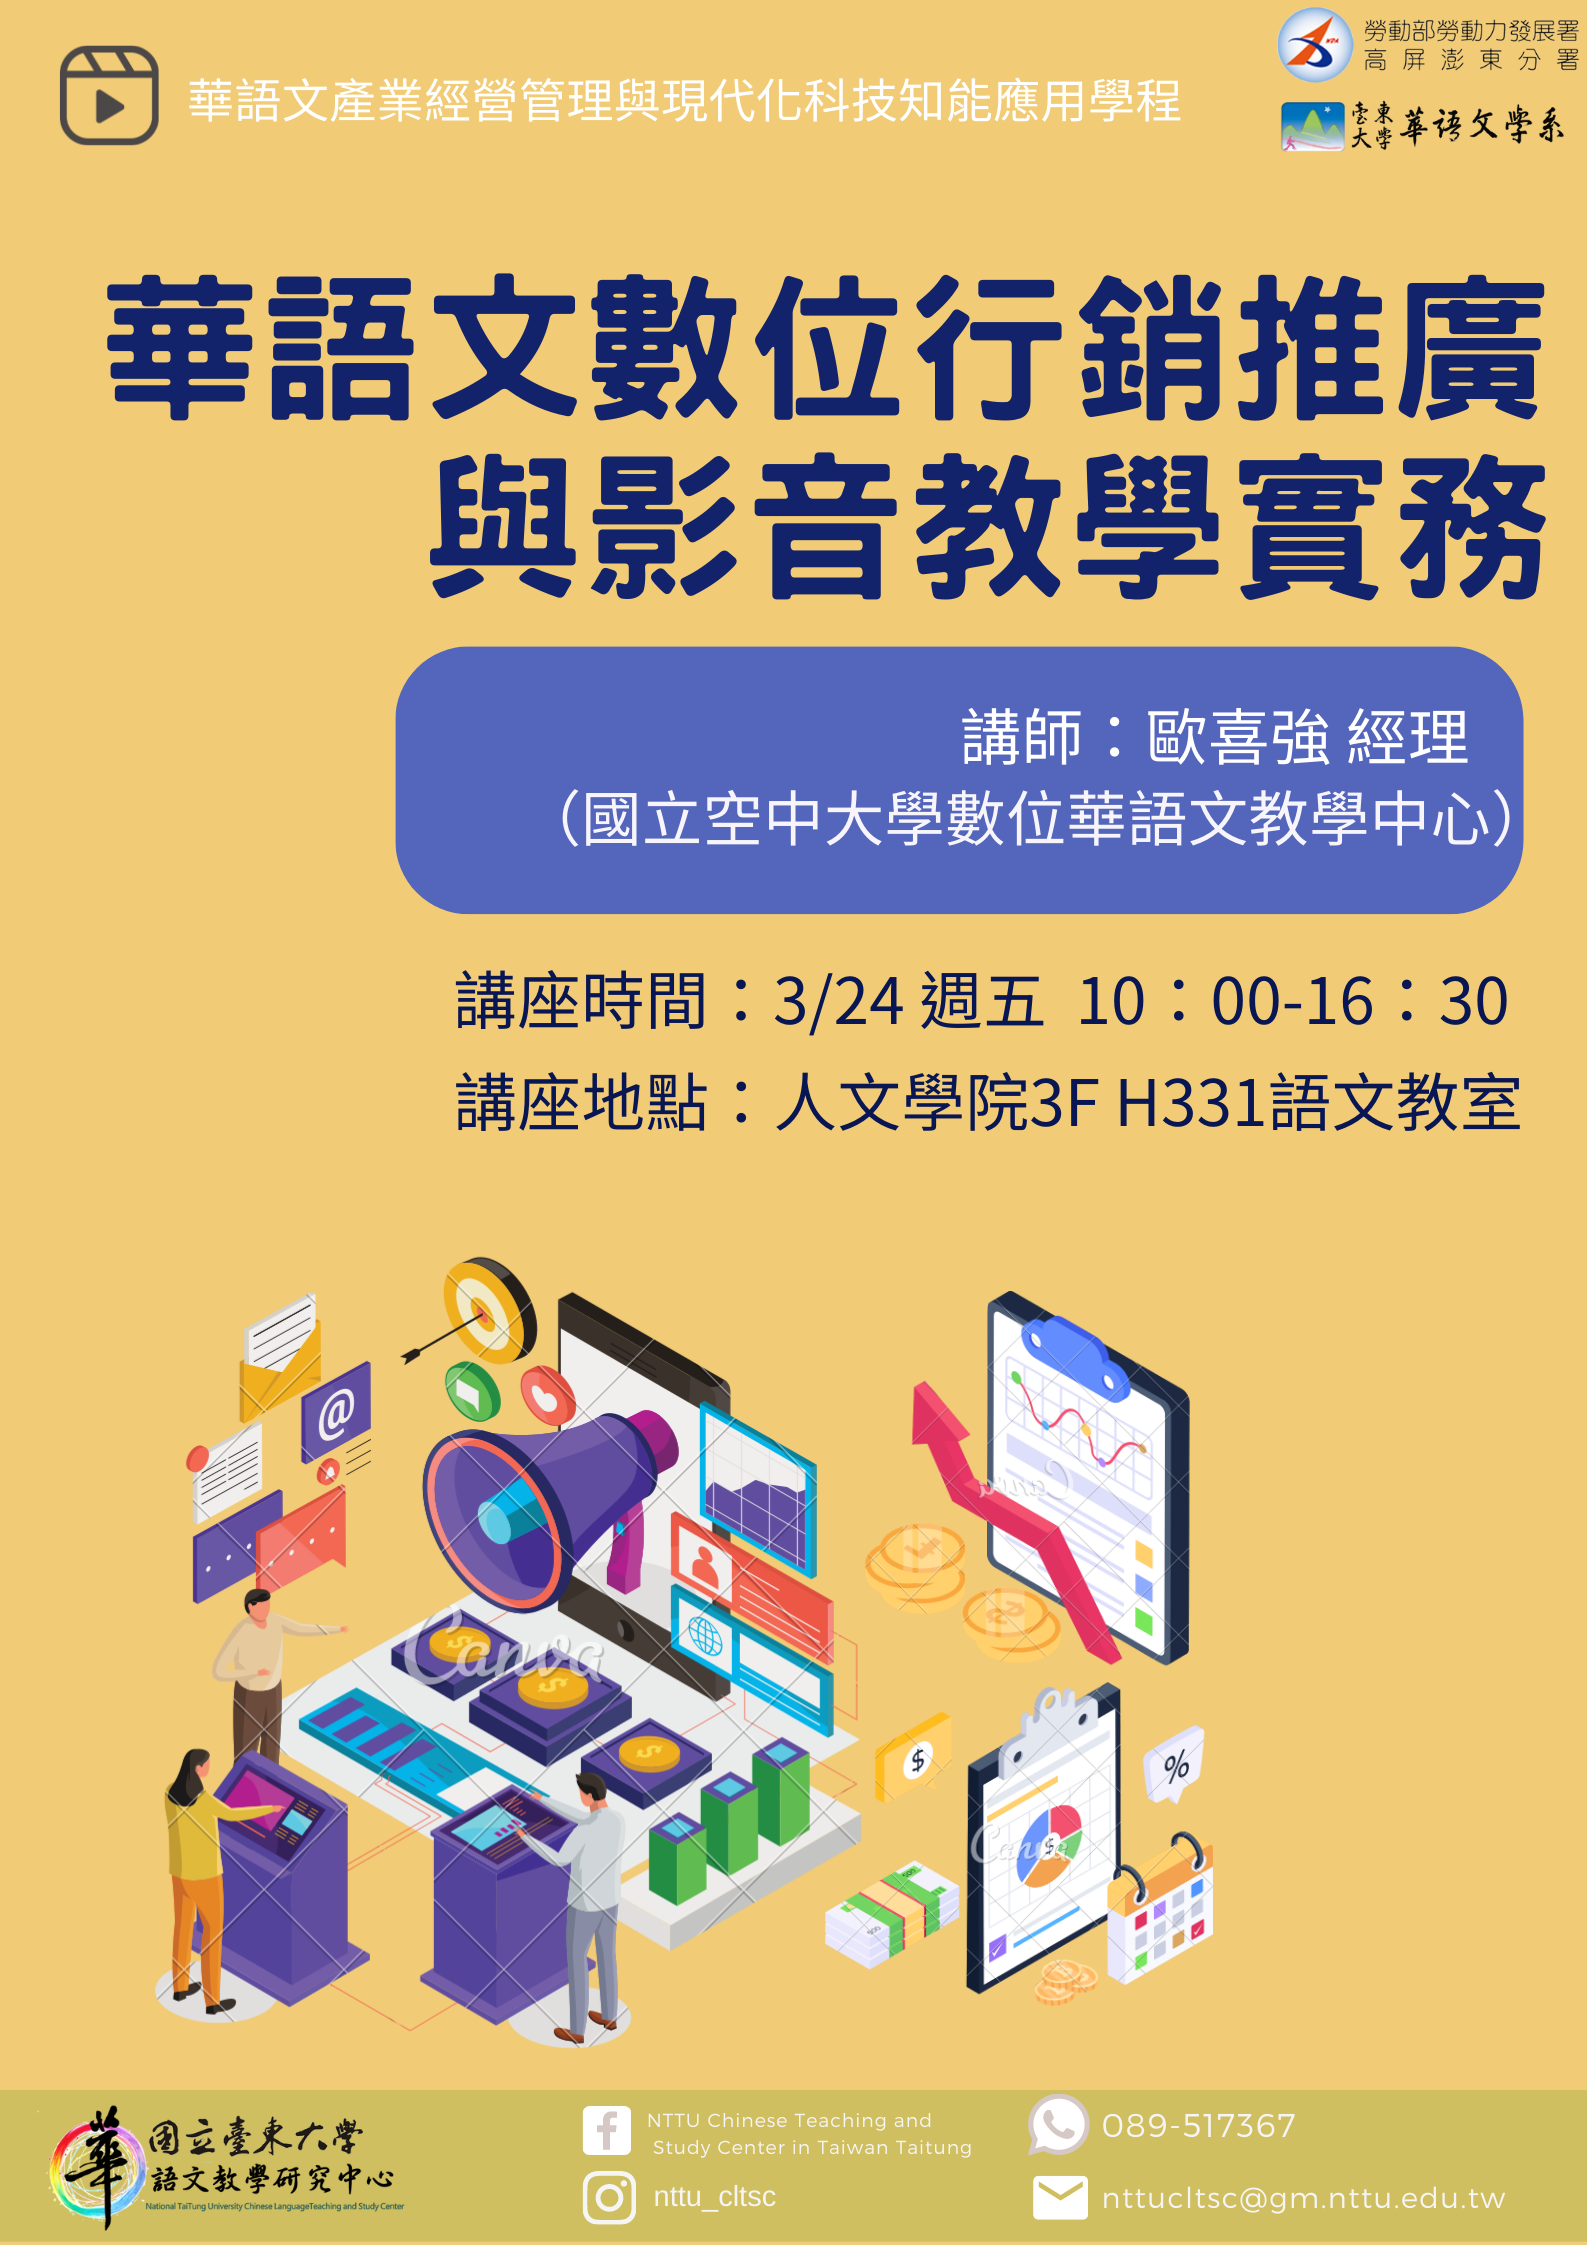 華語文數位行銷推廣與影音教學實務